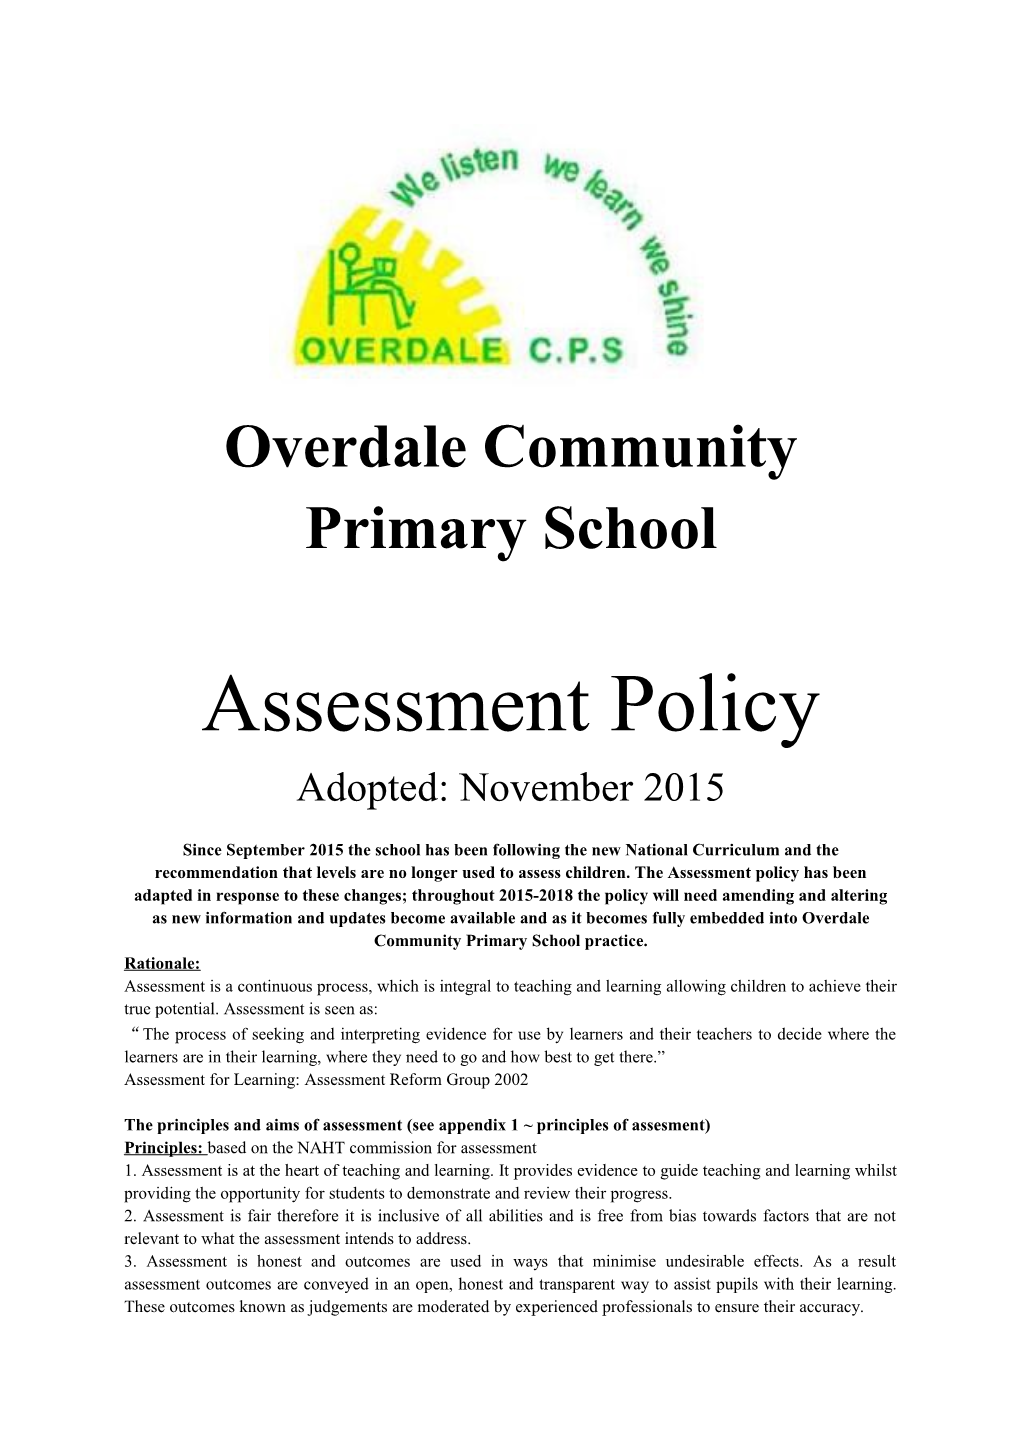 Overdale Community Primary School s1